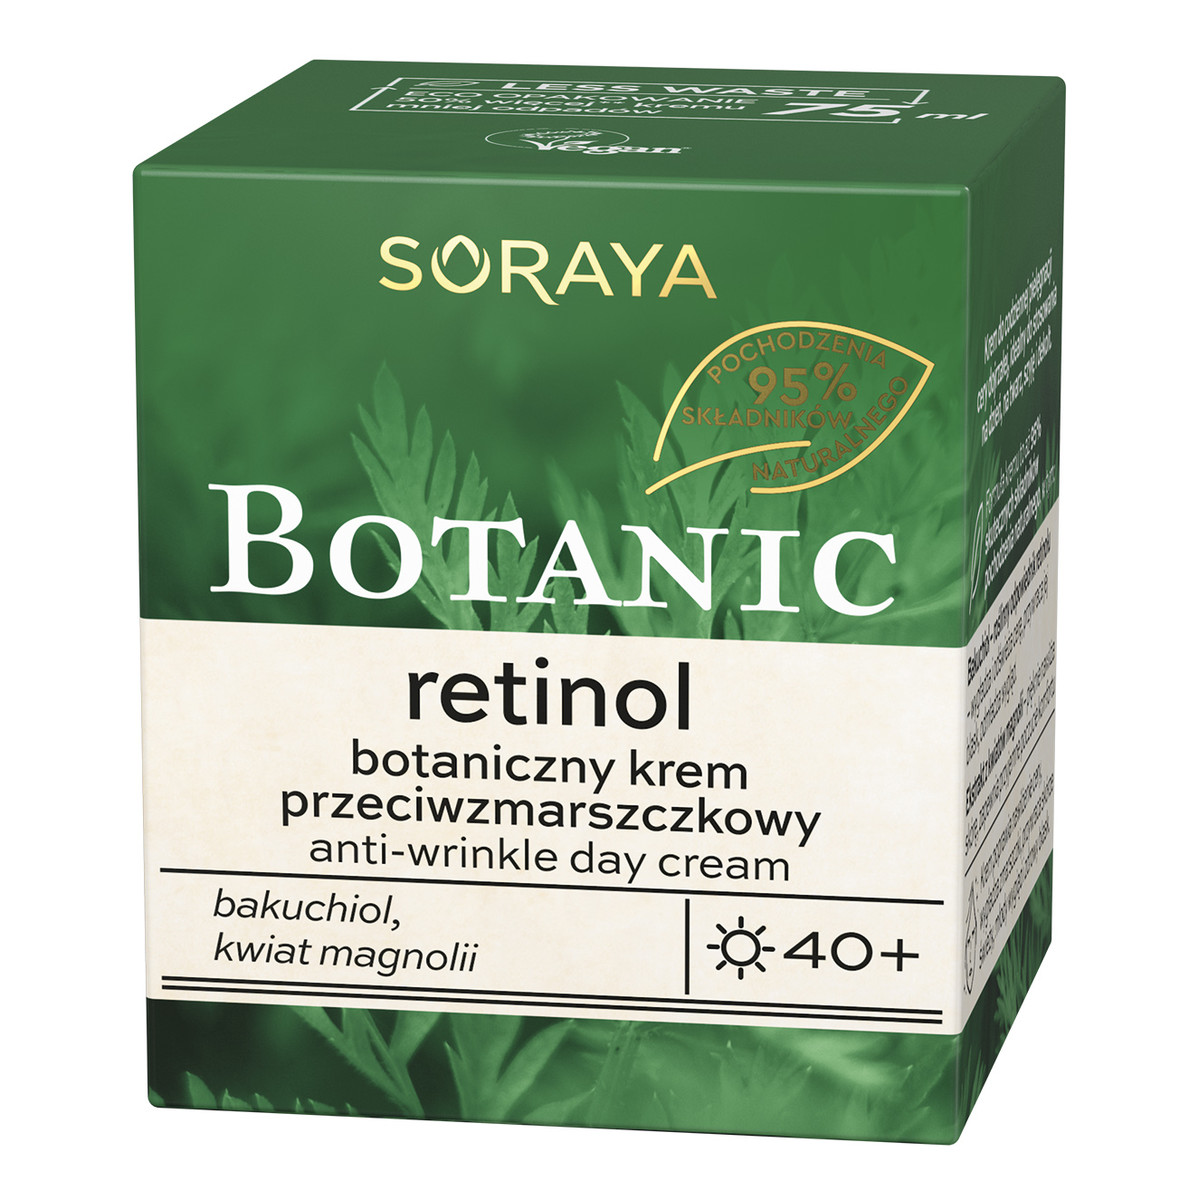 Soraya Botanic Retinol 40+ botaniczny krem przeciwzmarszczkowy na dzień 75ml